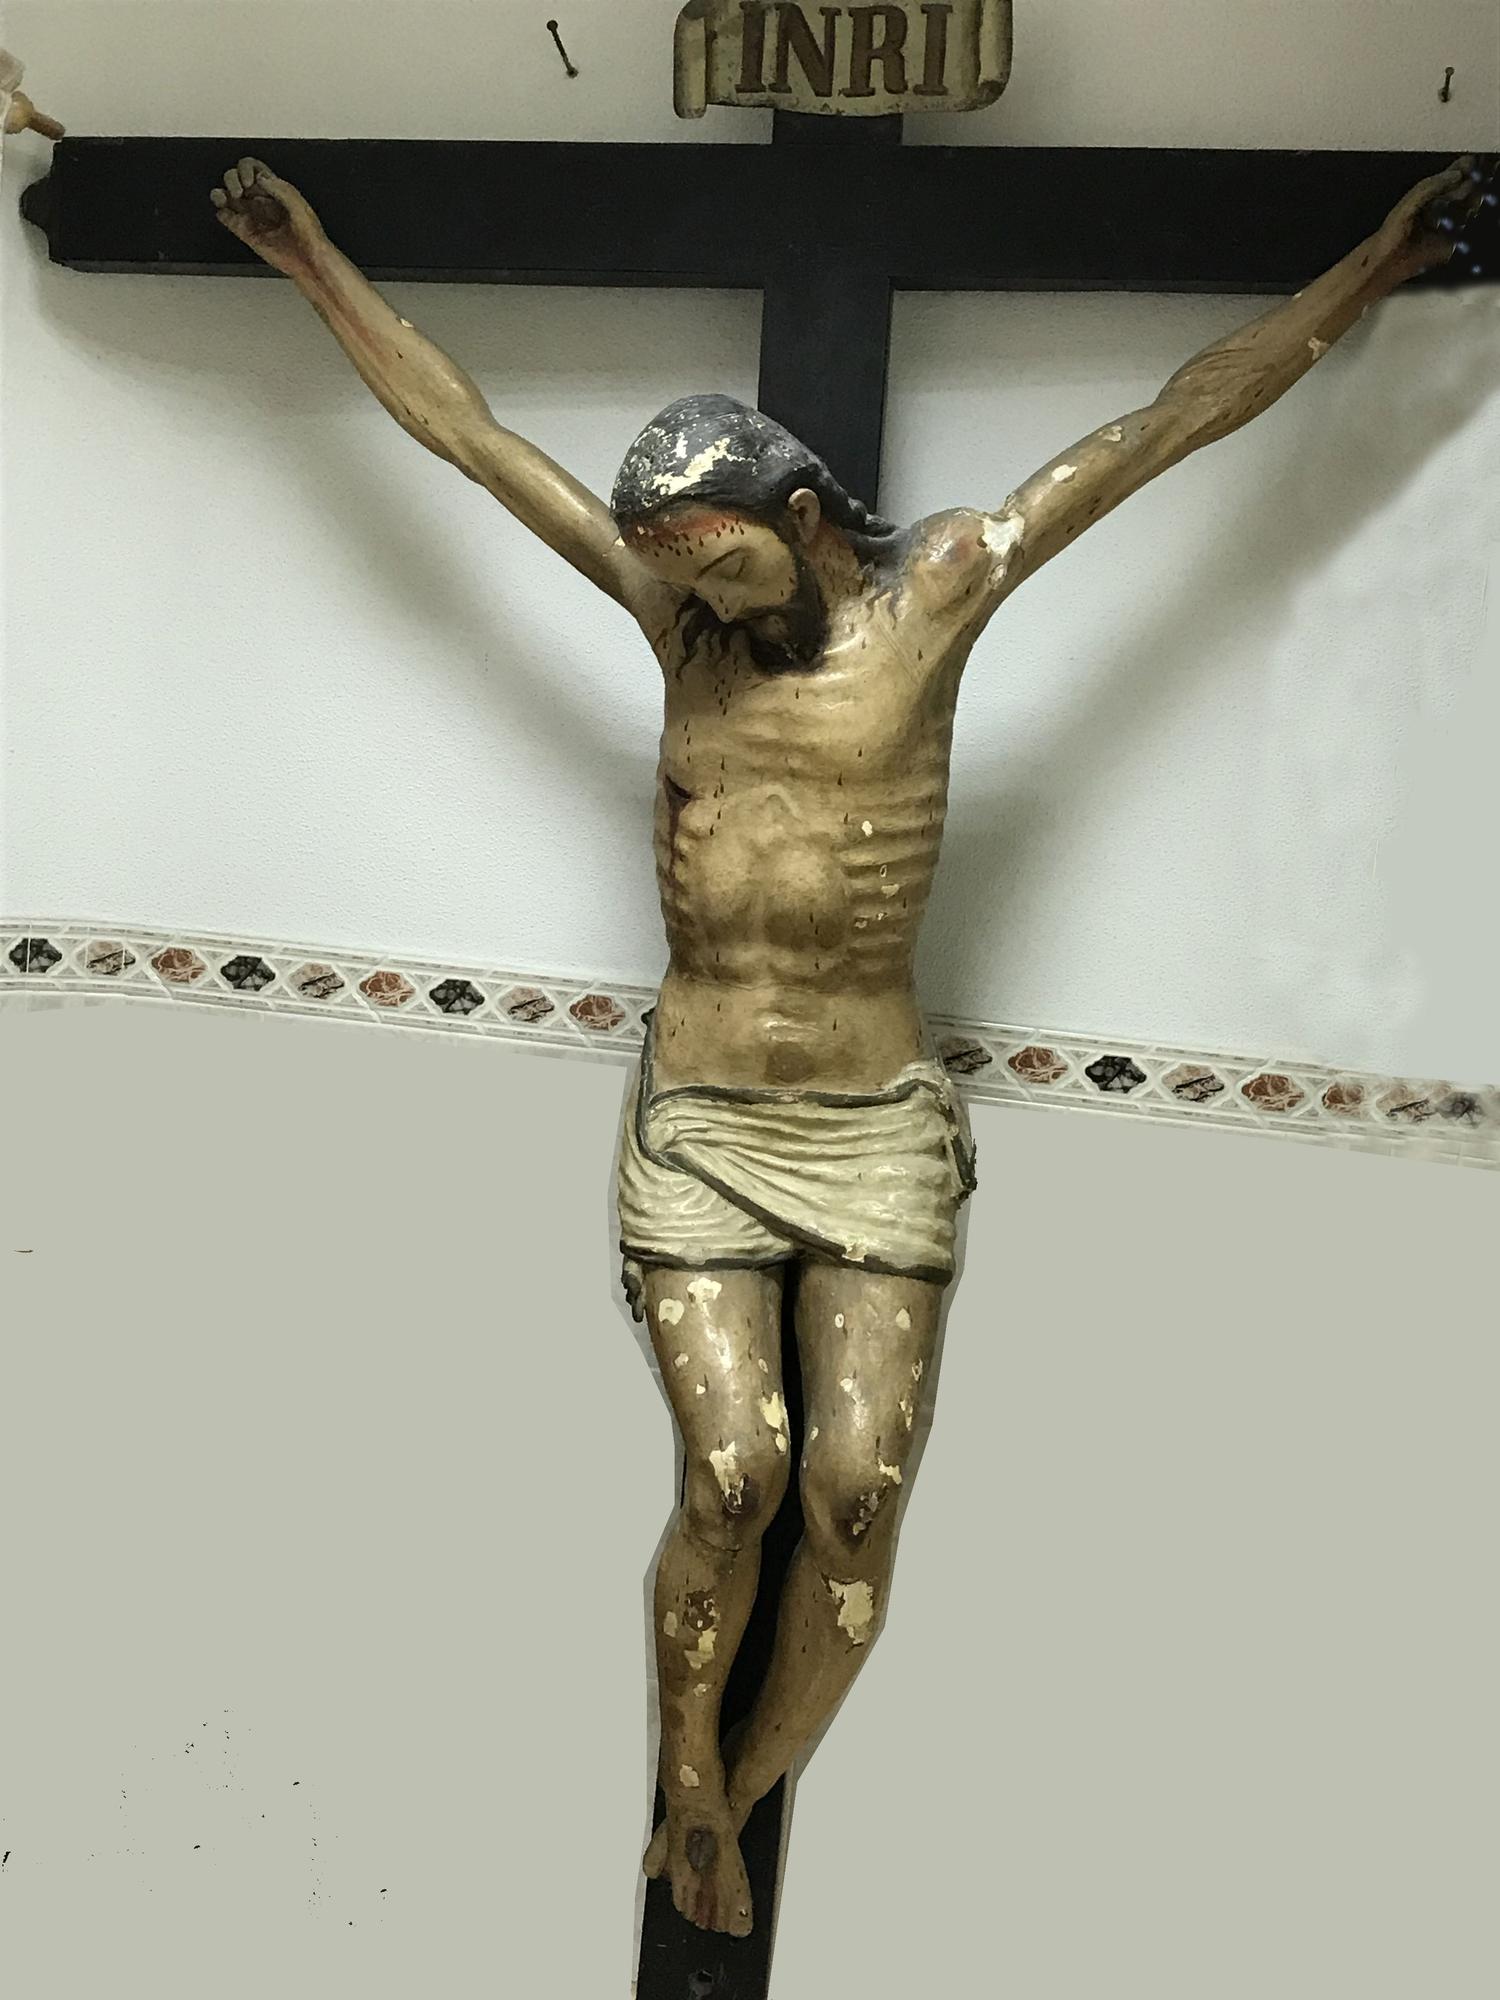 El cristo probablemente fuera tallado en Iberoamérica